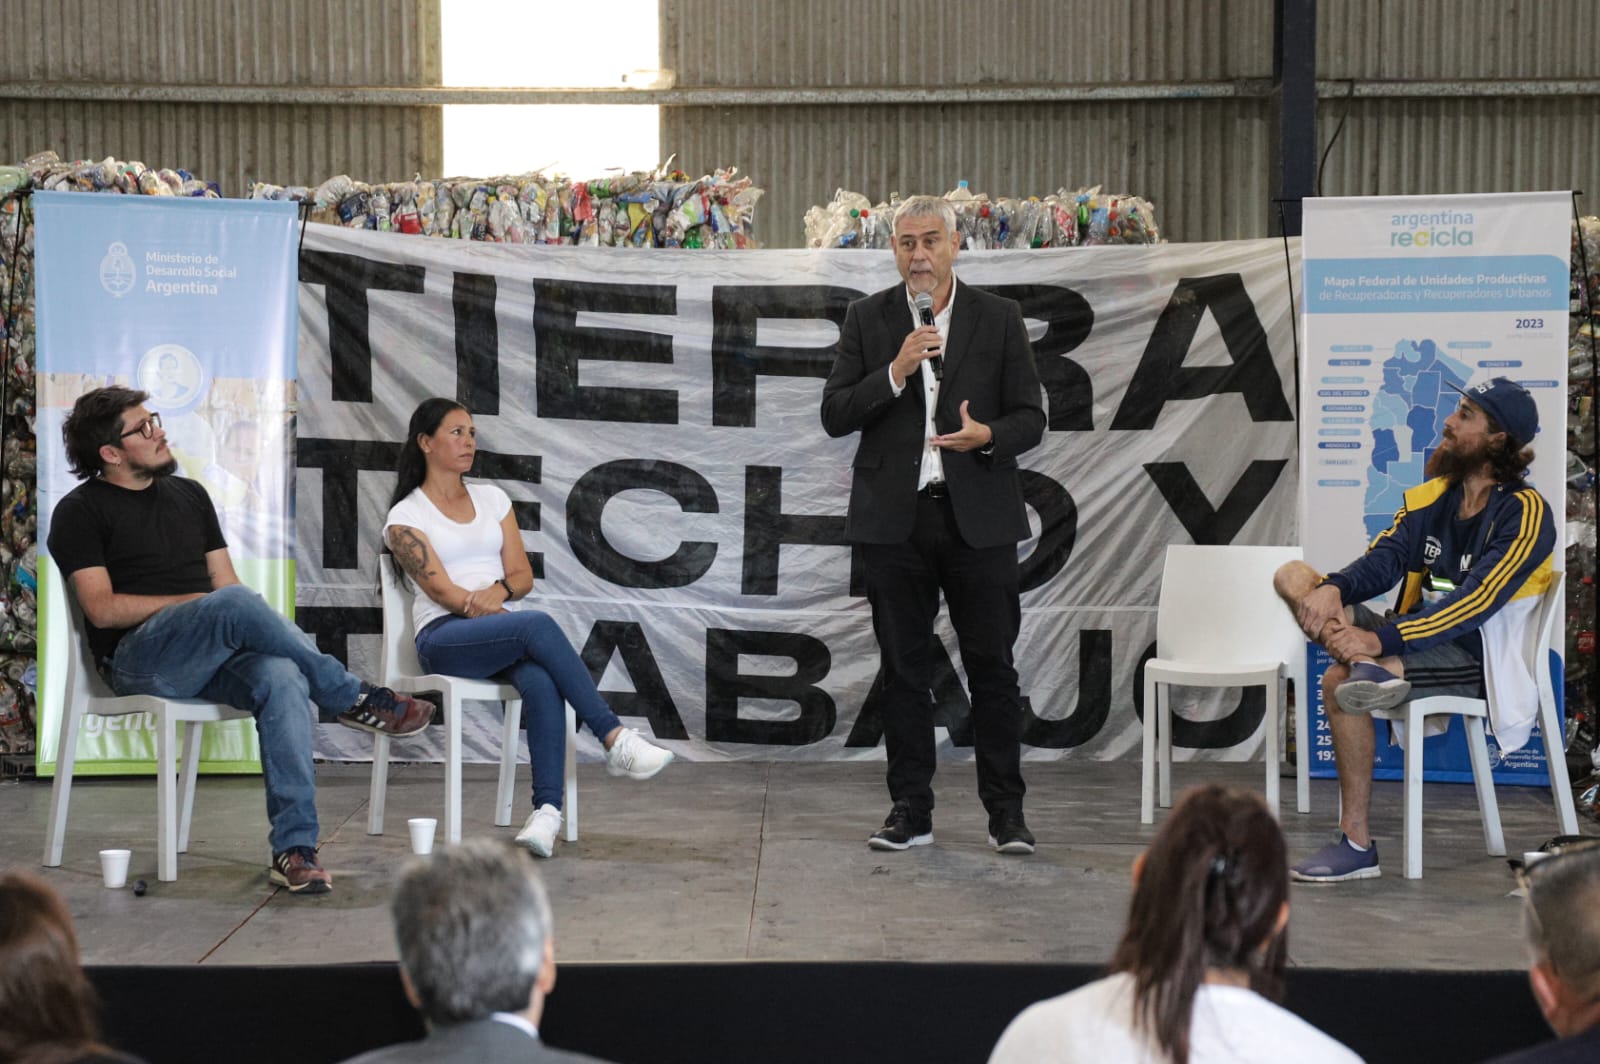 Ferraresi participó de la presentación del informe de gestión del programa Argentina Recicla